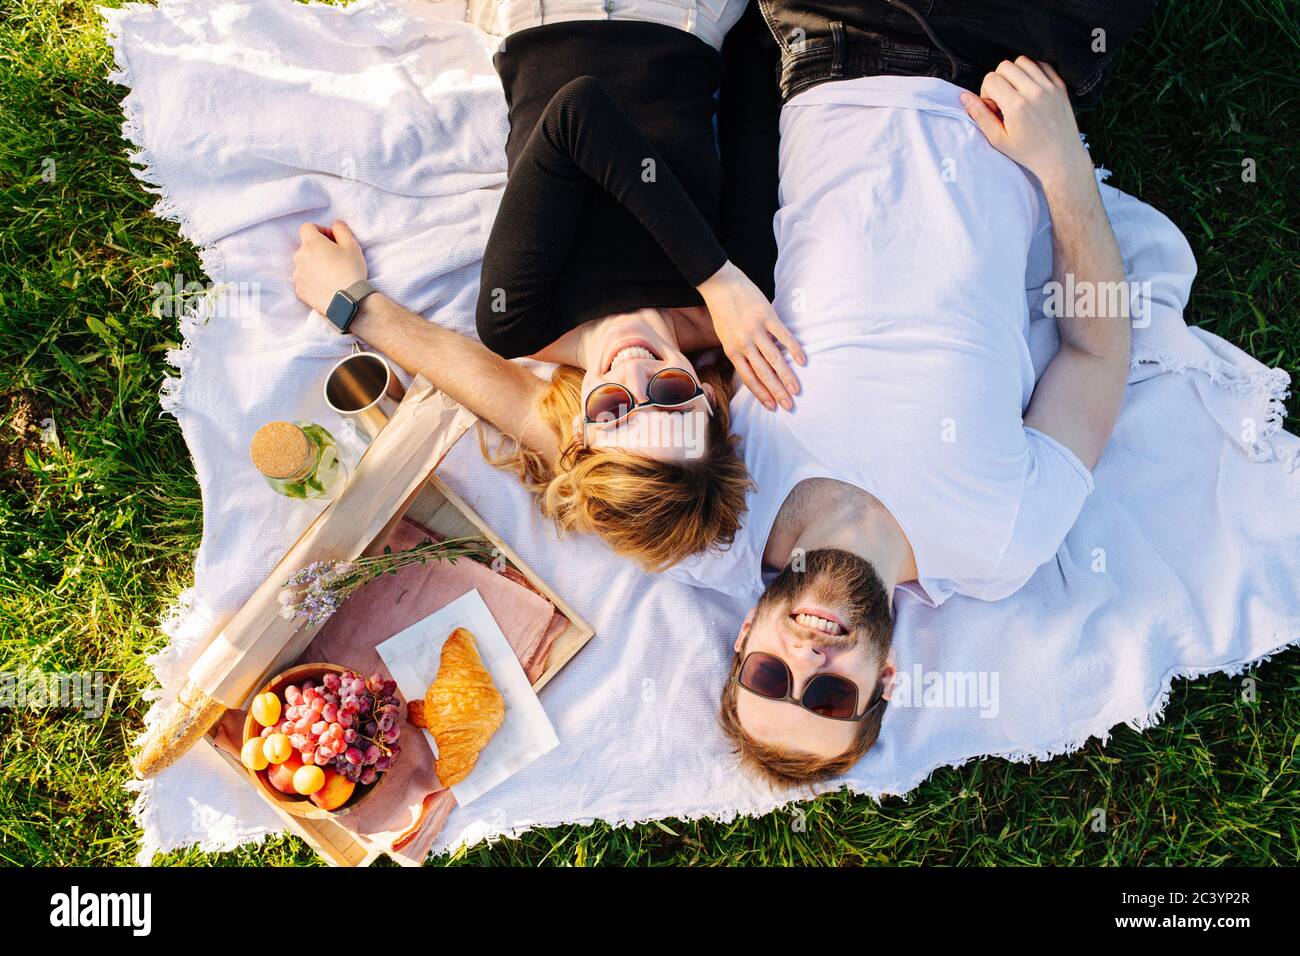 Glückliches Paar, das sich während des Picknicks auf einer Decke neben der Futterkiste ausruhte Stockfoto